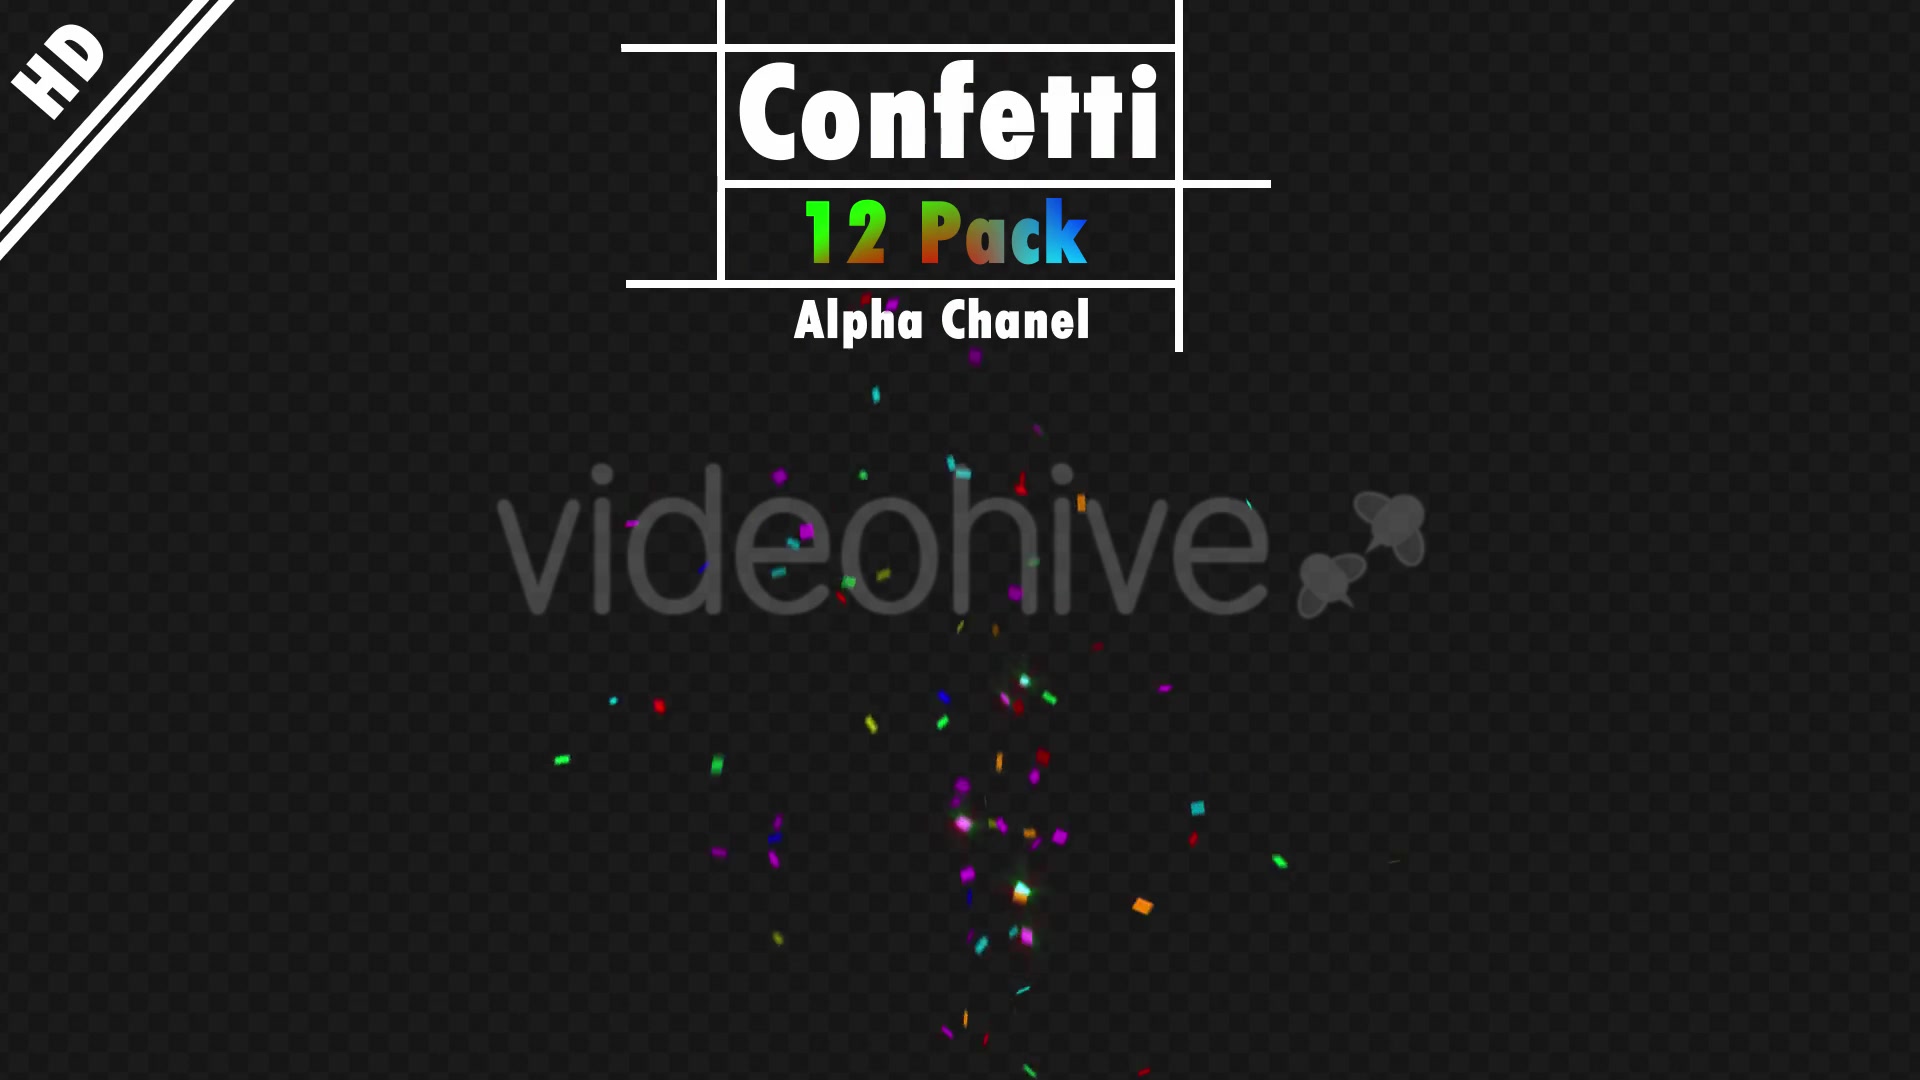 Confetti Videohive 20192923 Motion Graphics Image 8